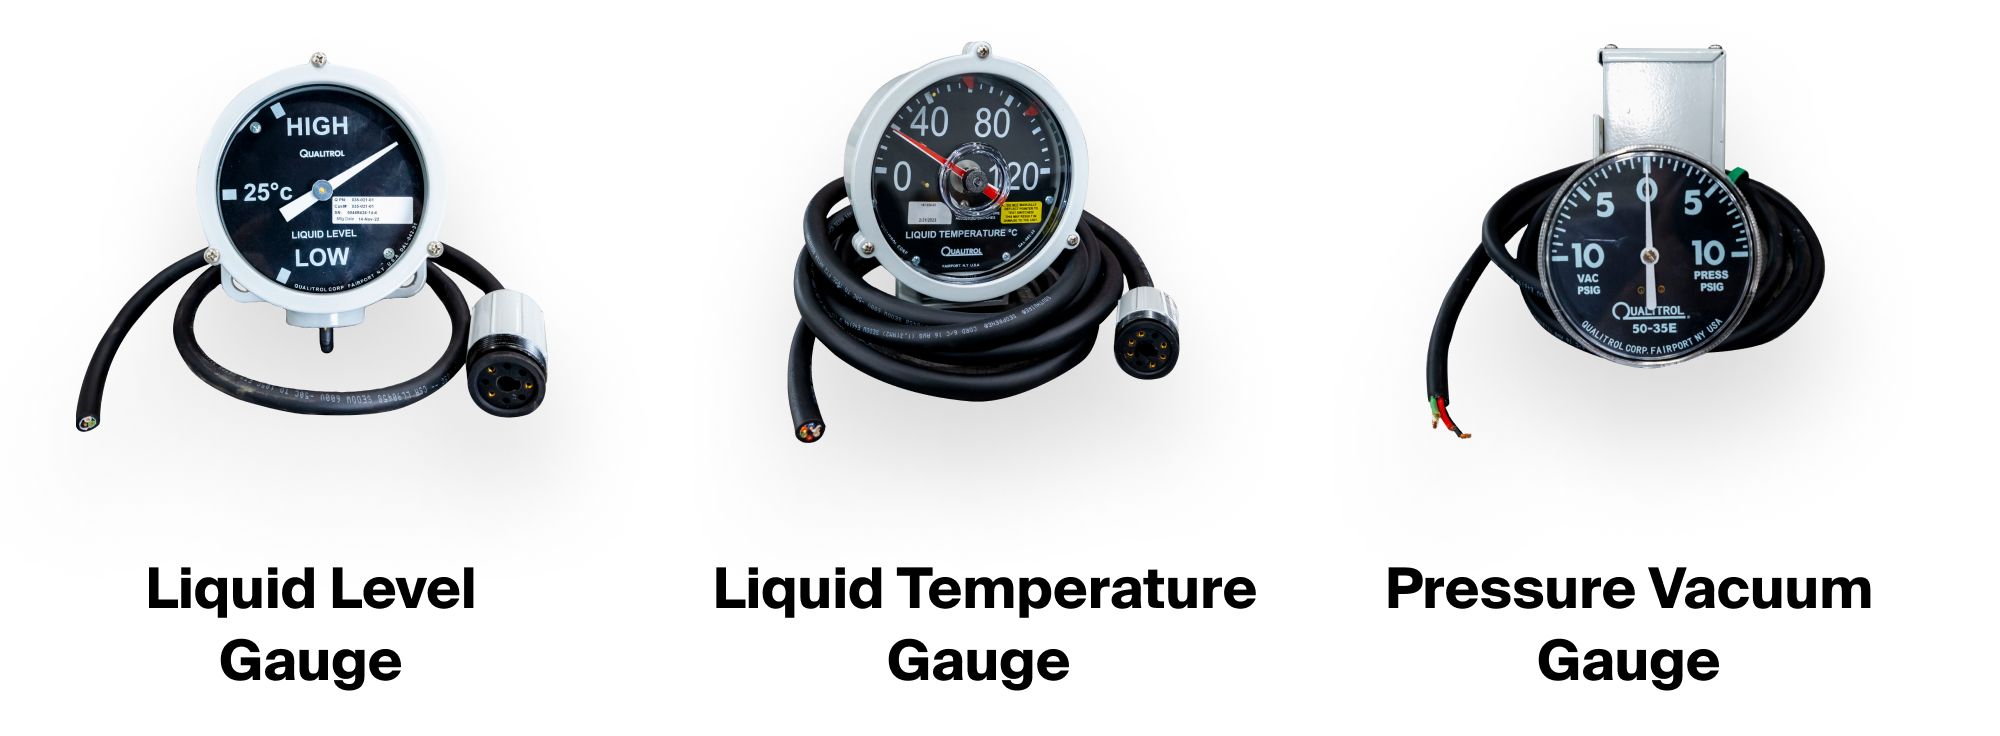 Maddox substation transformer gauges with alarm contacts: liquid level gauge, liquid temperature gauge, and pressure vacuum gauge.